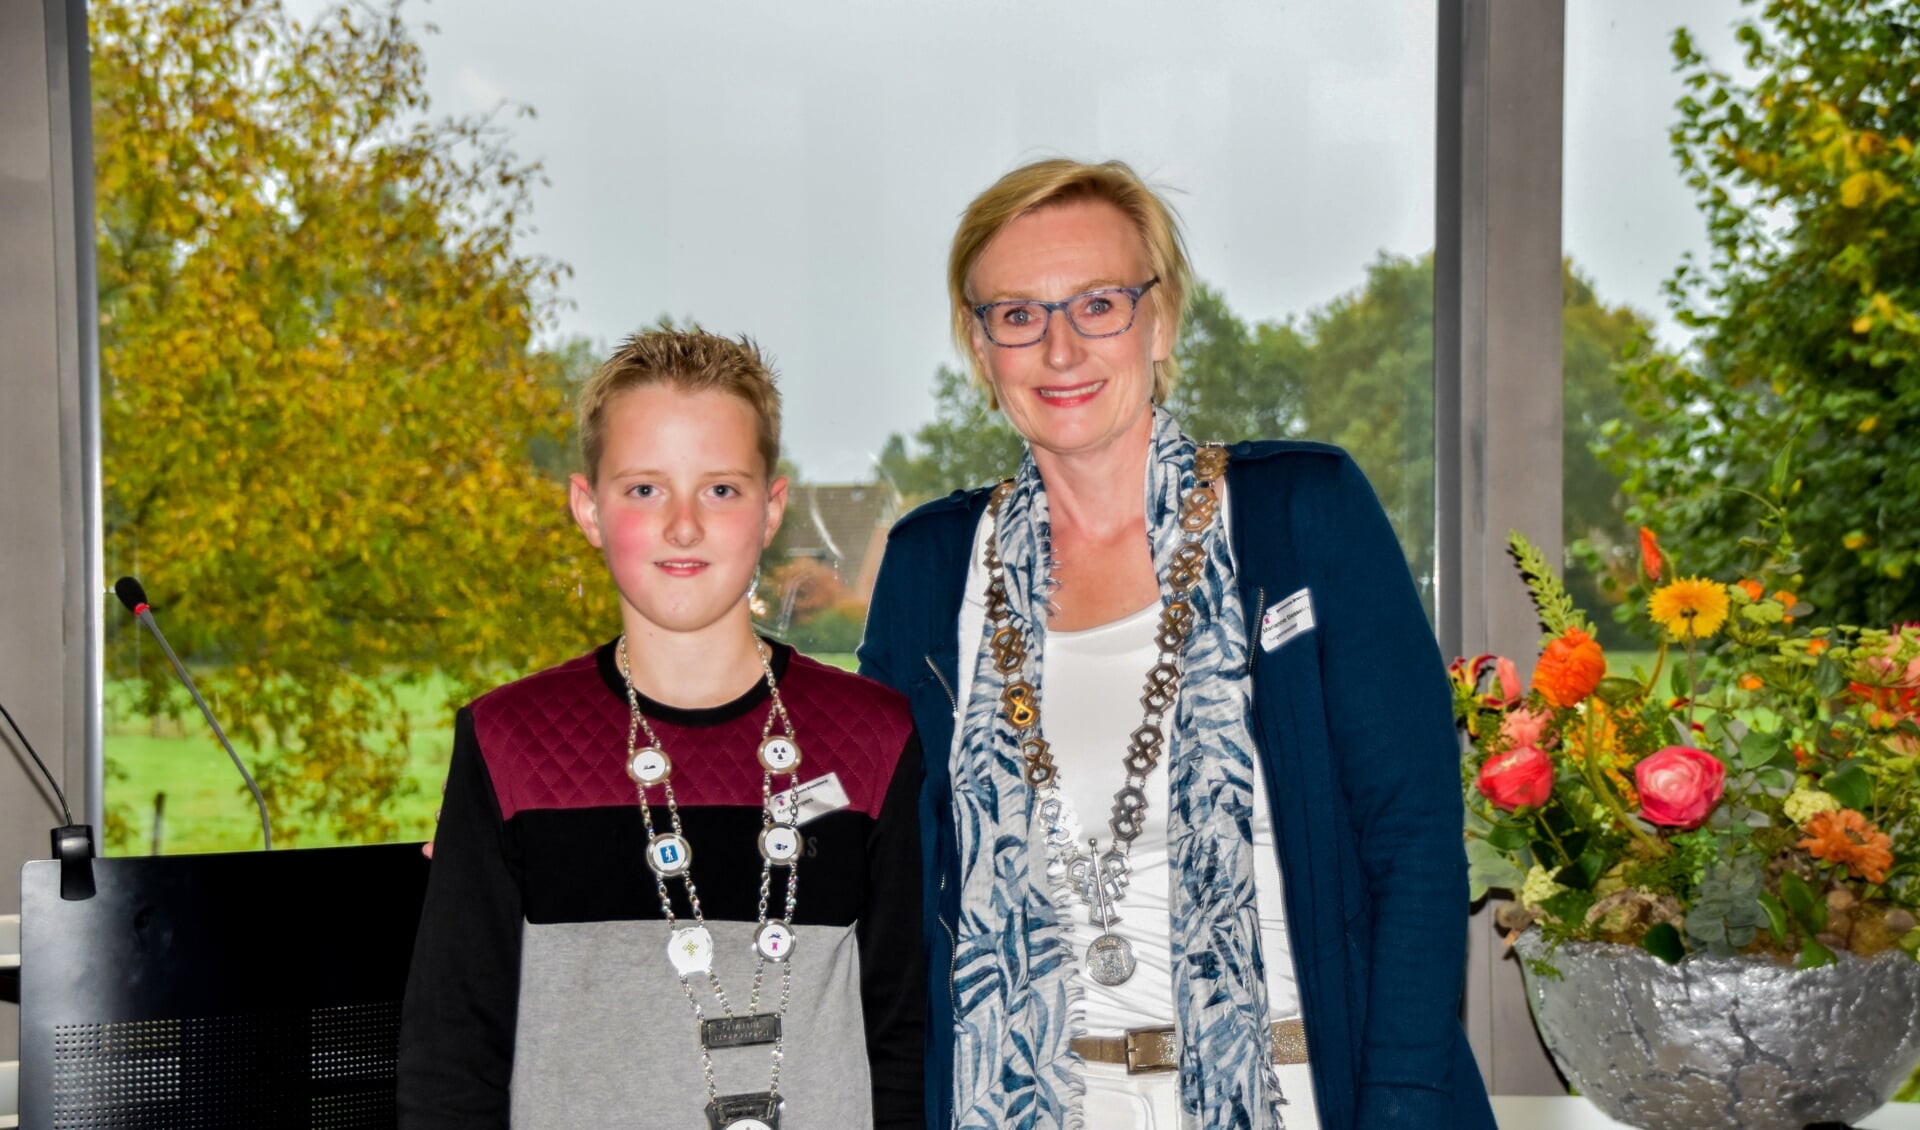 Kjeld Kempers, de nieuwe jeugdburgemeester van de gemeente Bronckhorst samen met zijn collega burgemeester Marianne Besselink. Foto: Alice Rouwhorst